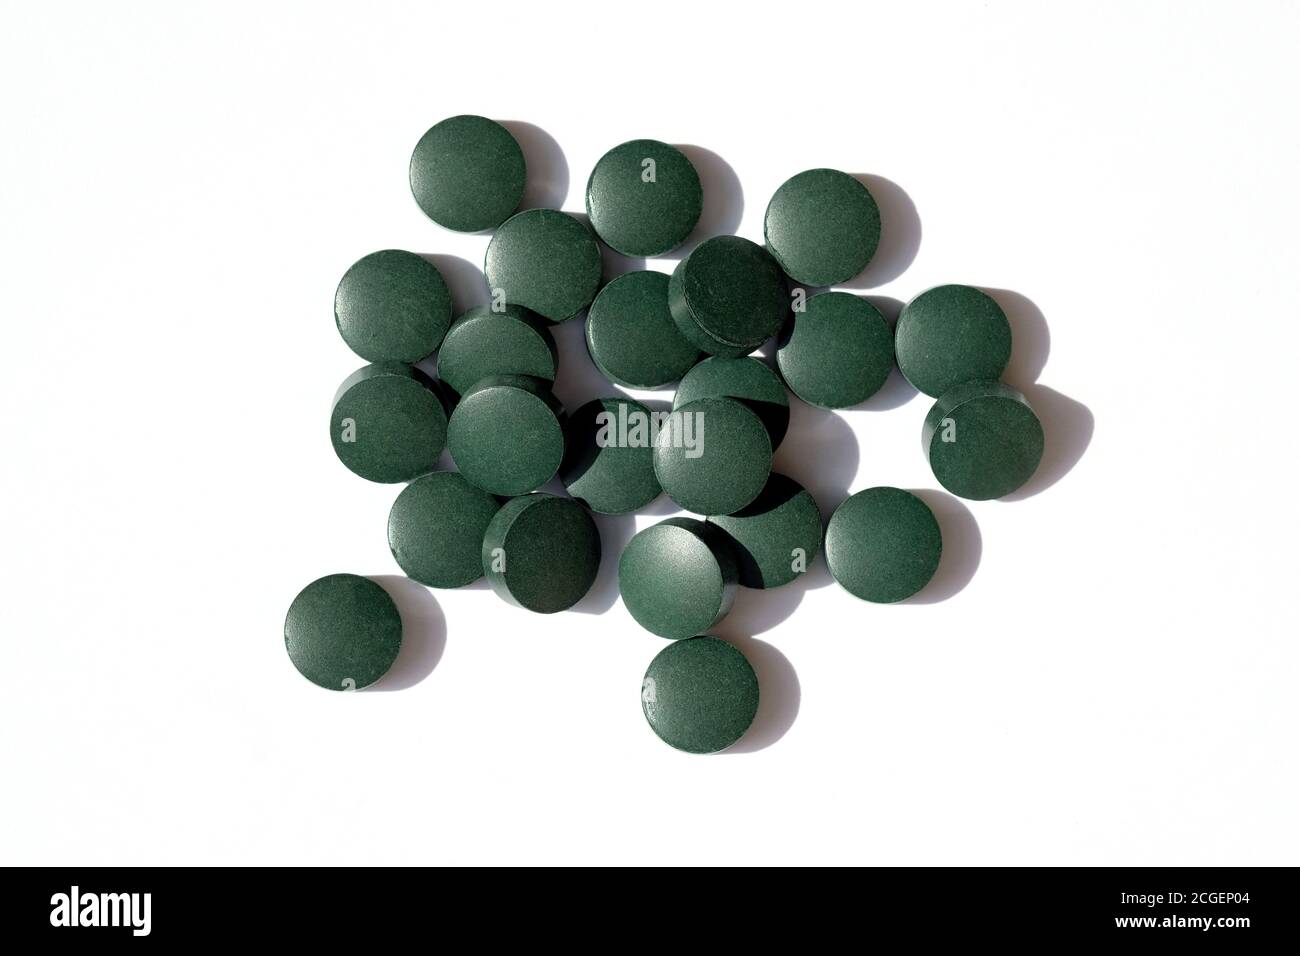 Arrondir les pilules vertes sur un fond blanc vue du dessus. Les comprimés de Chlorella sont des suppléments alimentaires. Spiruline sous forme de pilule. Banque D'Images